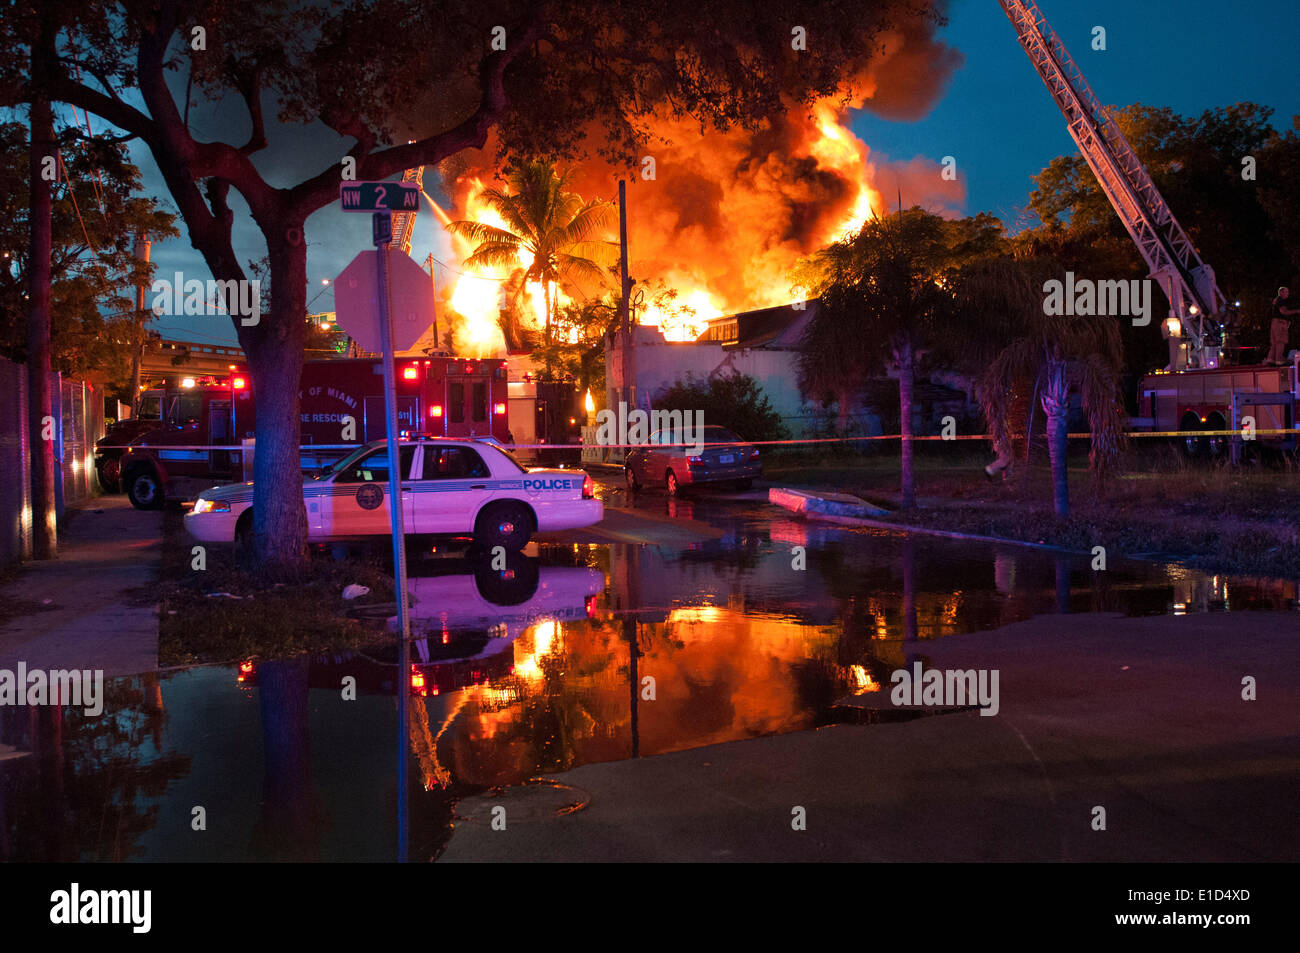 Mayo 30, 2014 - Miami, Florida, EE.UU. - bomberos luchar contra un incendio en su casa en el NW 14 Terrace. (Crédito de la Imagen: © Maria Izaurralde/ZUMA Press) Foto de stock